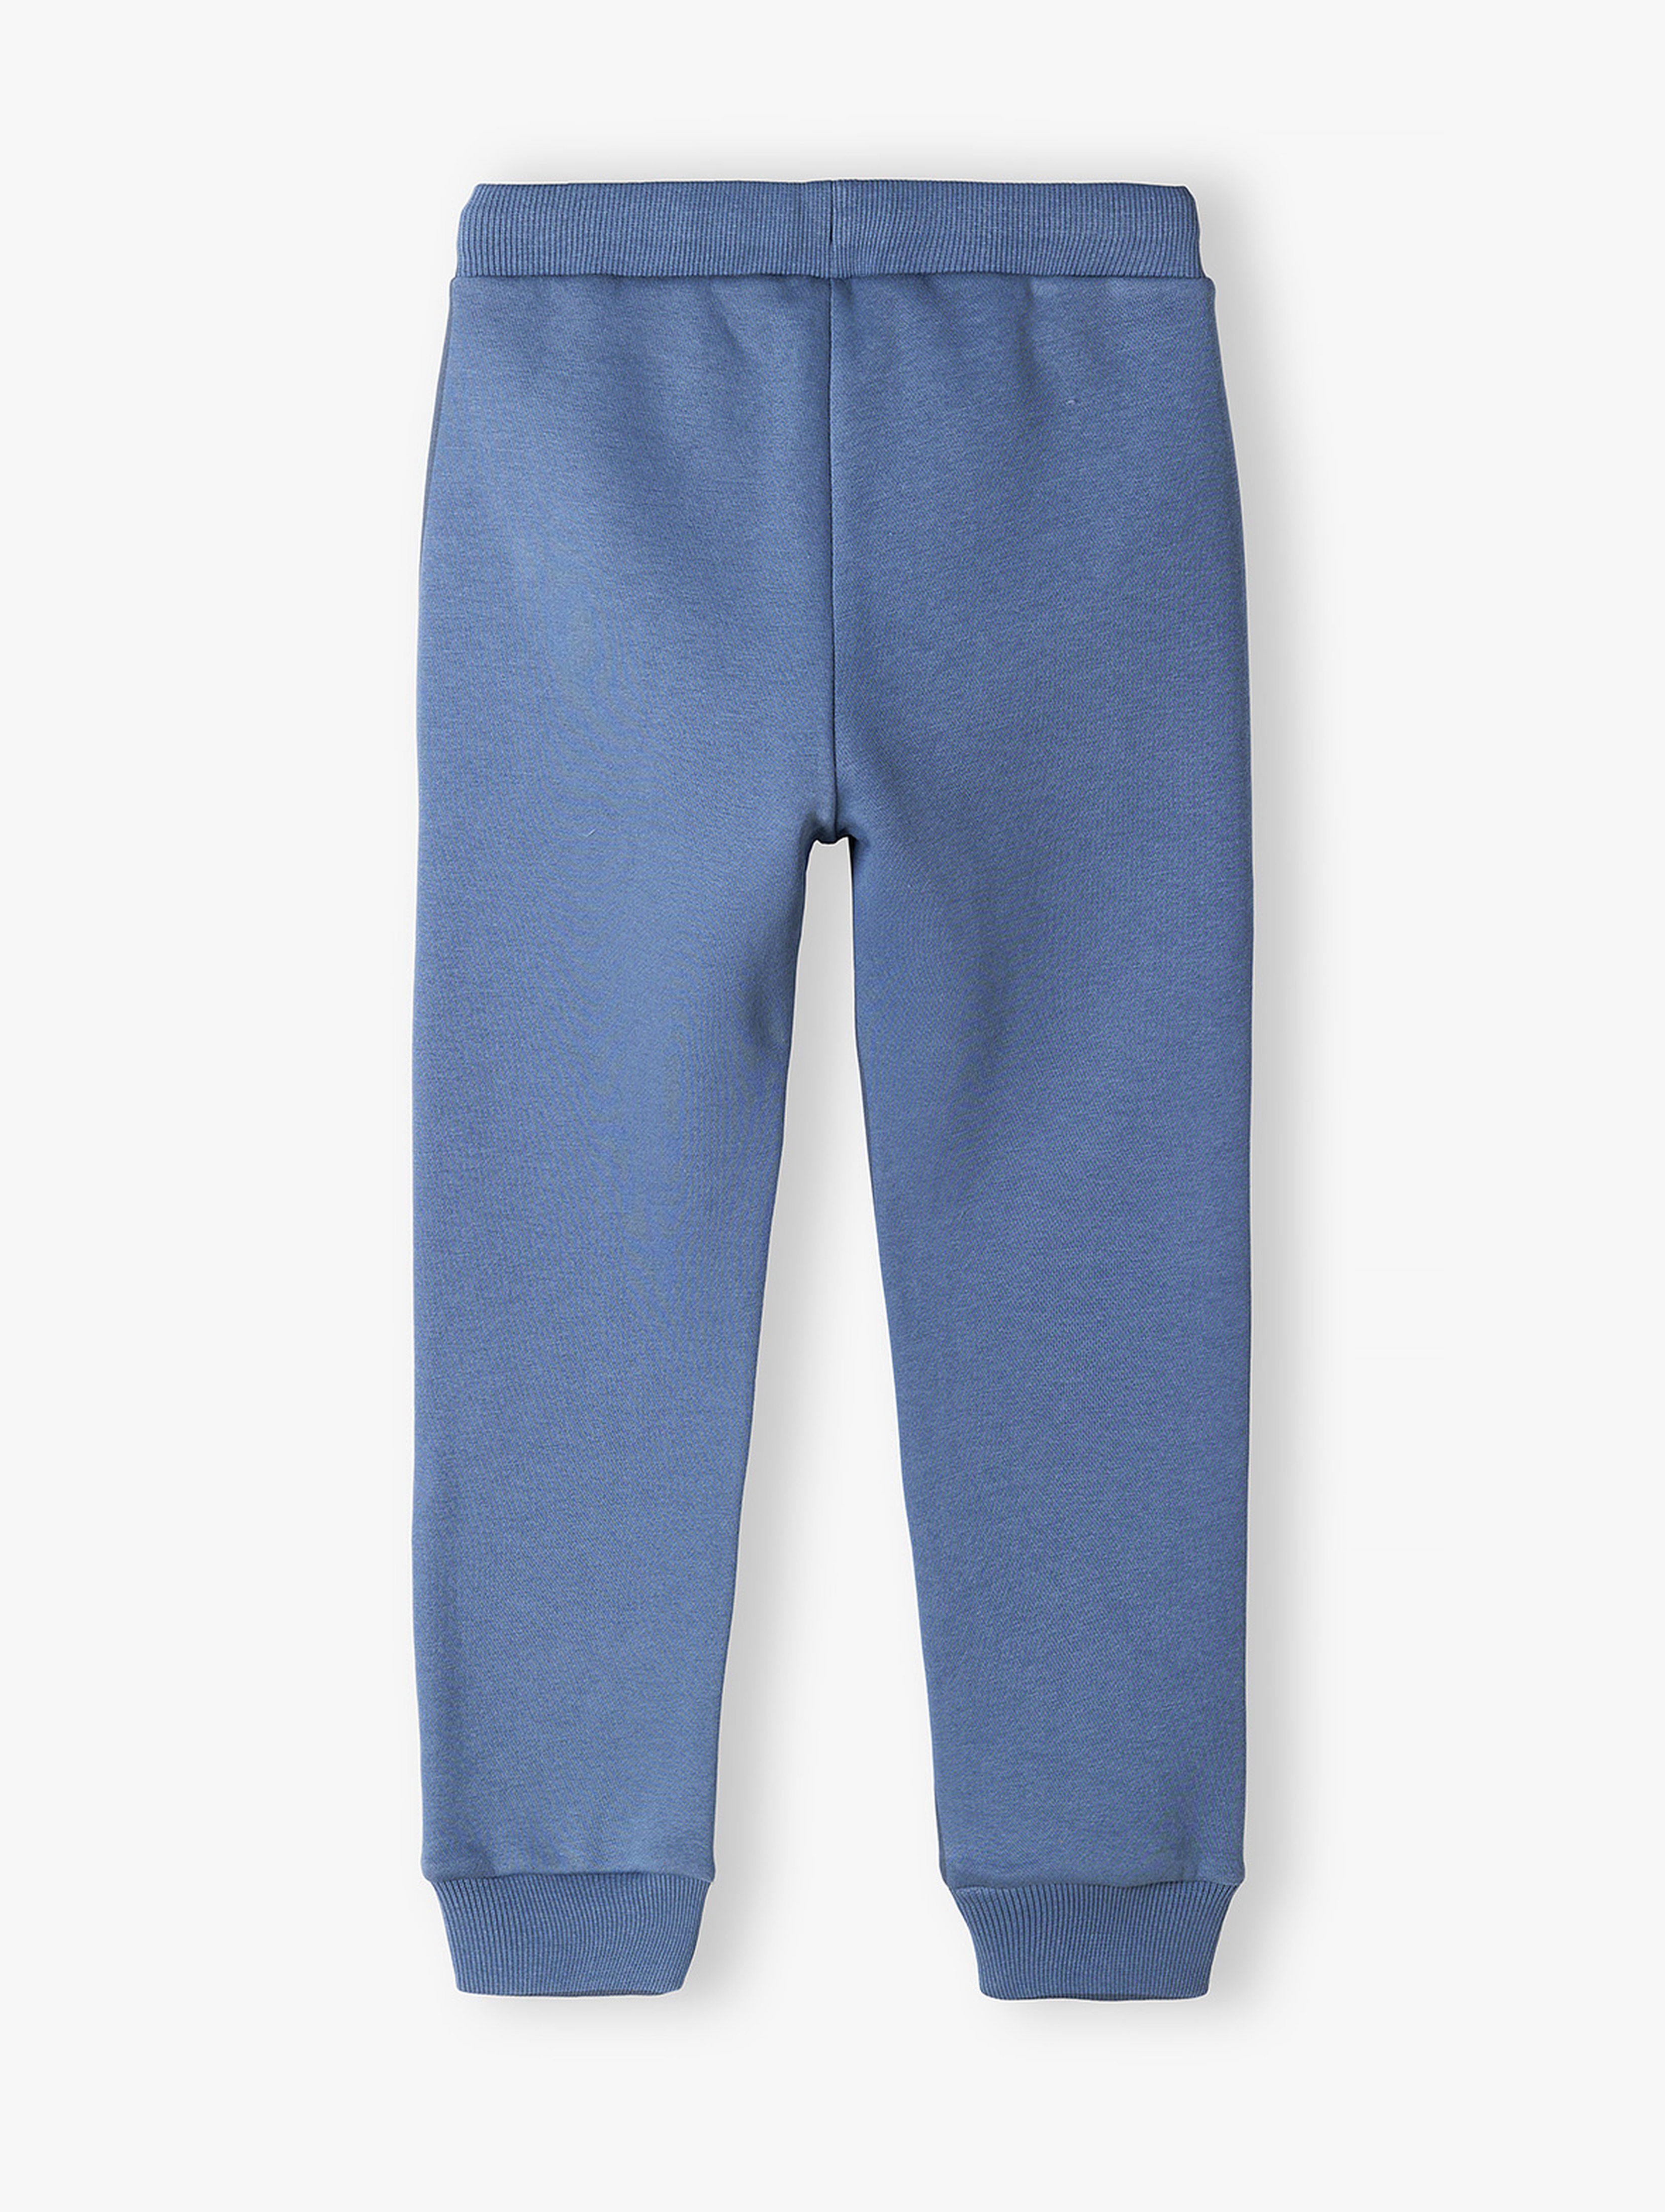 Spodnie dresowe niebieskie z napisem na nogawce- New generation